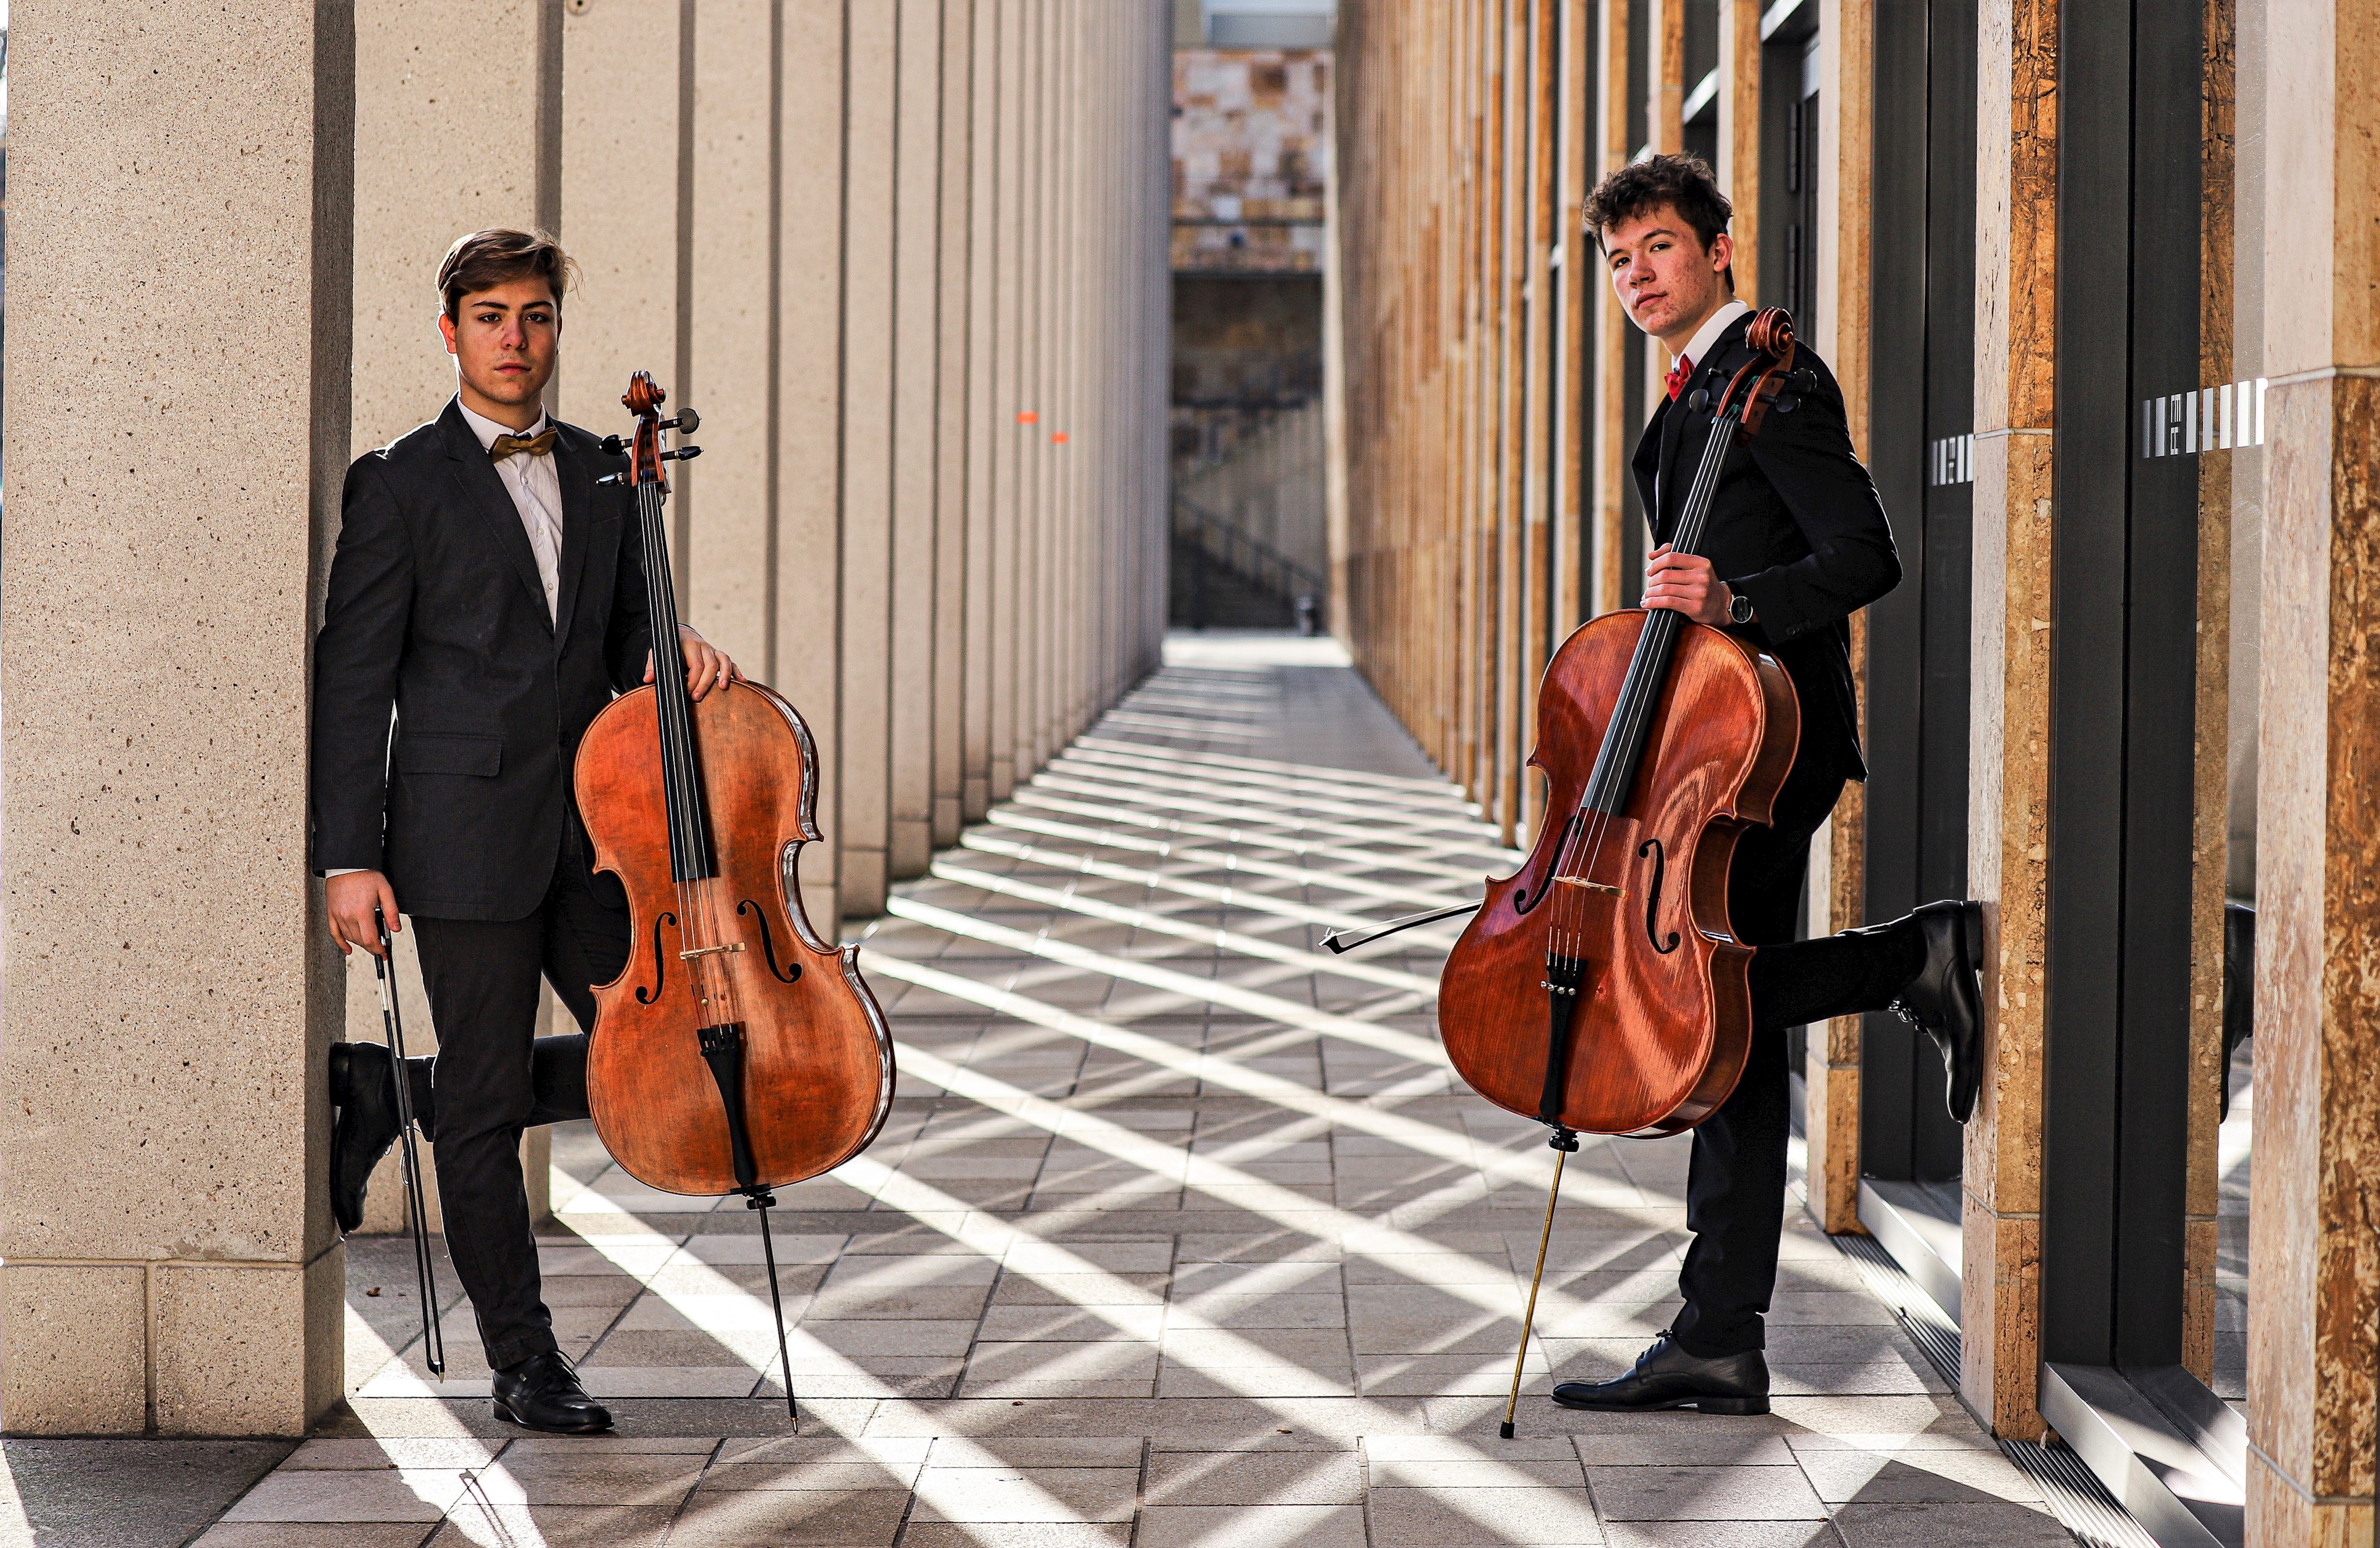 Aus Wiesbaden kommen die beiden jungen Musiker, die seit 2018 als CelloDuo unterwegs sind und sich schnell einen Namen weit über ihre Heimatstadt hinaus gemacht haben.